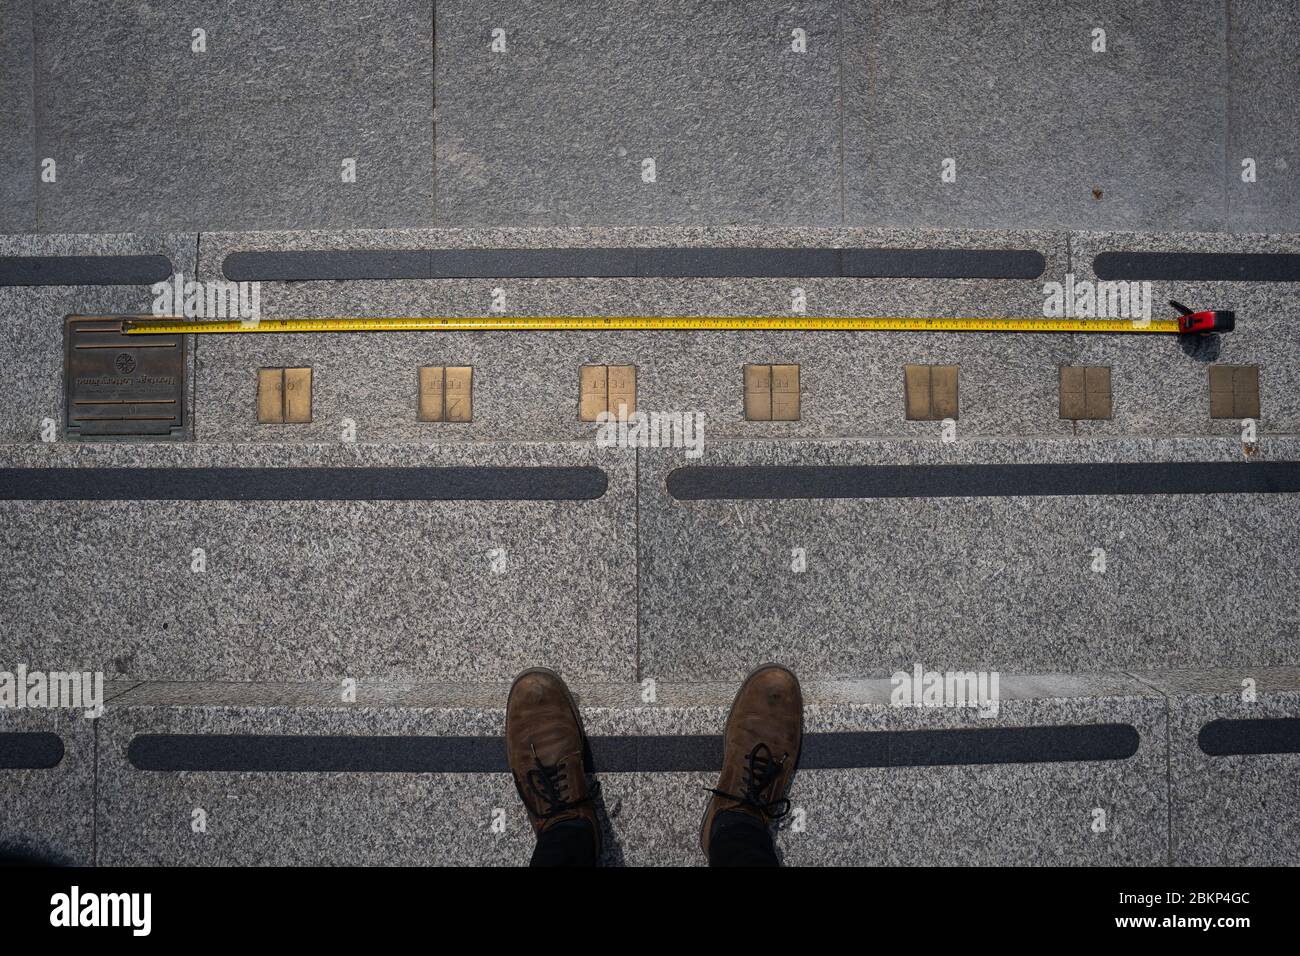 Se coloca una cinta métrica contra los marcadores de medición imperiales incorporados en los escalones que conducen a la Galería Nacional de Retratos en Trafalgar Square en Londres, mientras el Reino Unido continúa en bloqueo para ayudar a frenar la propagación del coronavirus. Foto de stock